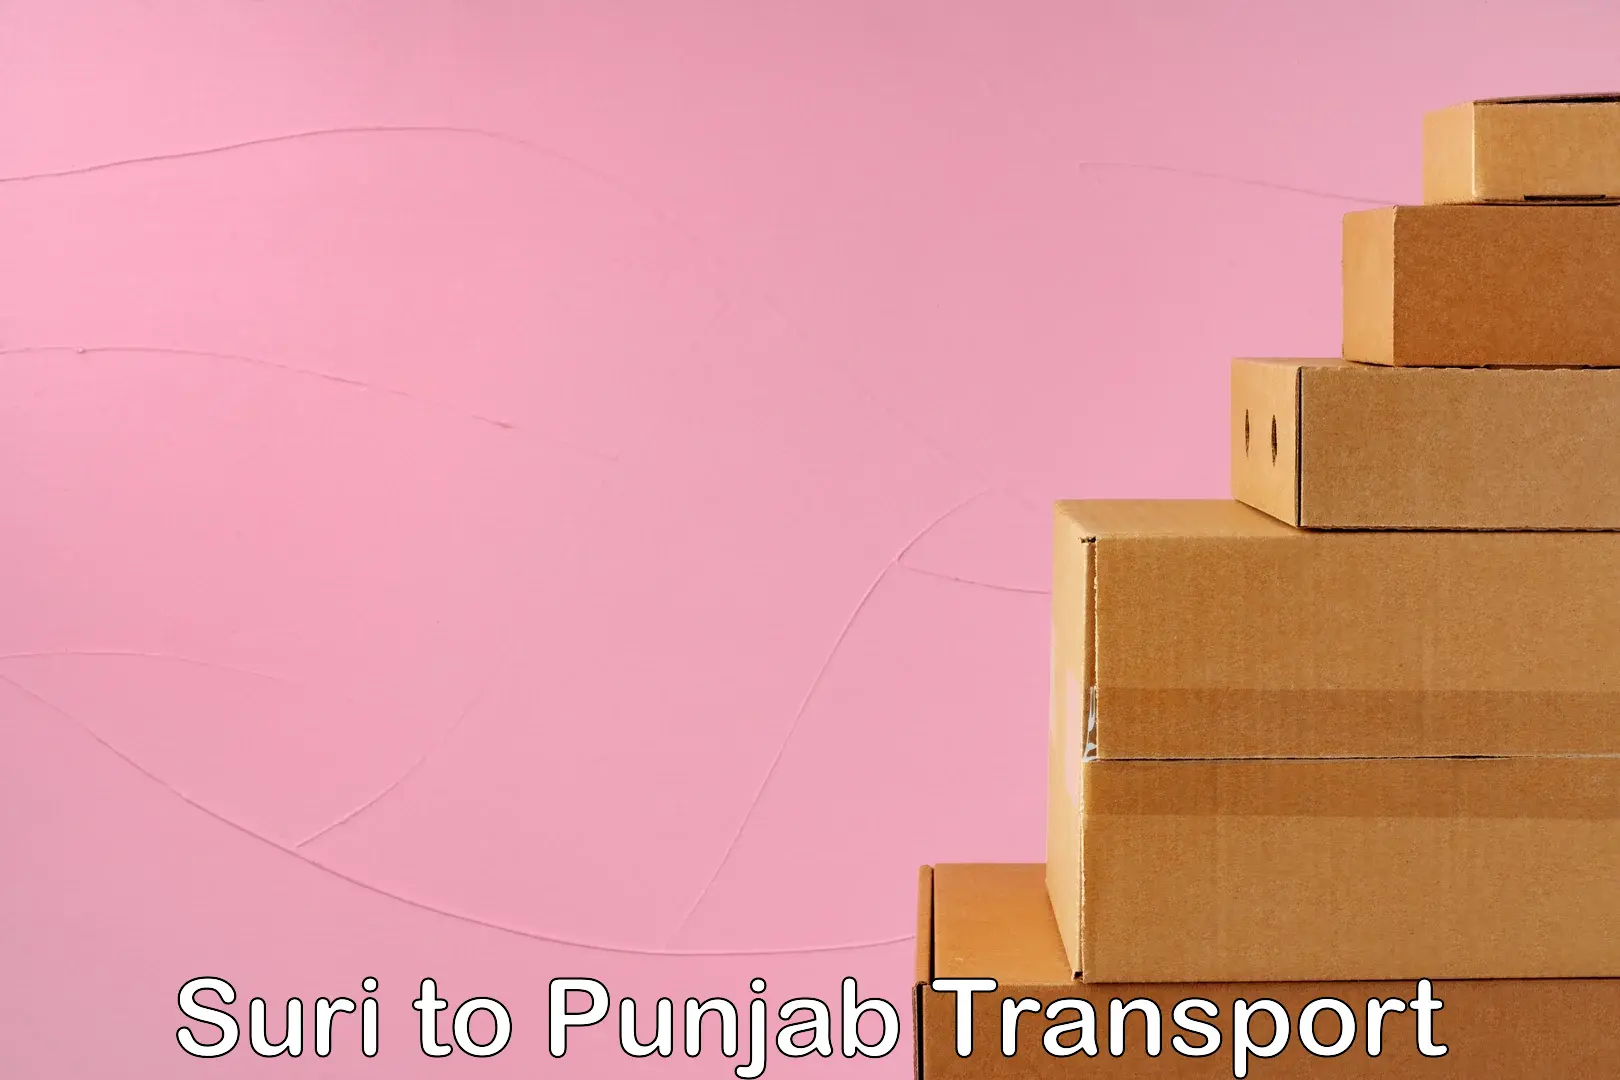 Air freight transport services Suri to Sirhind Fatehgarh